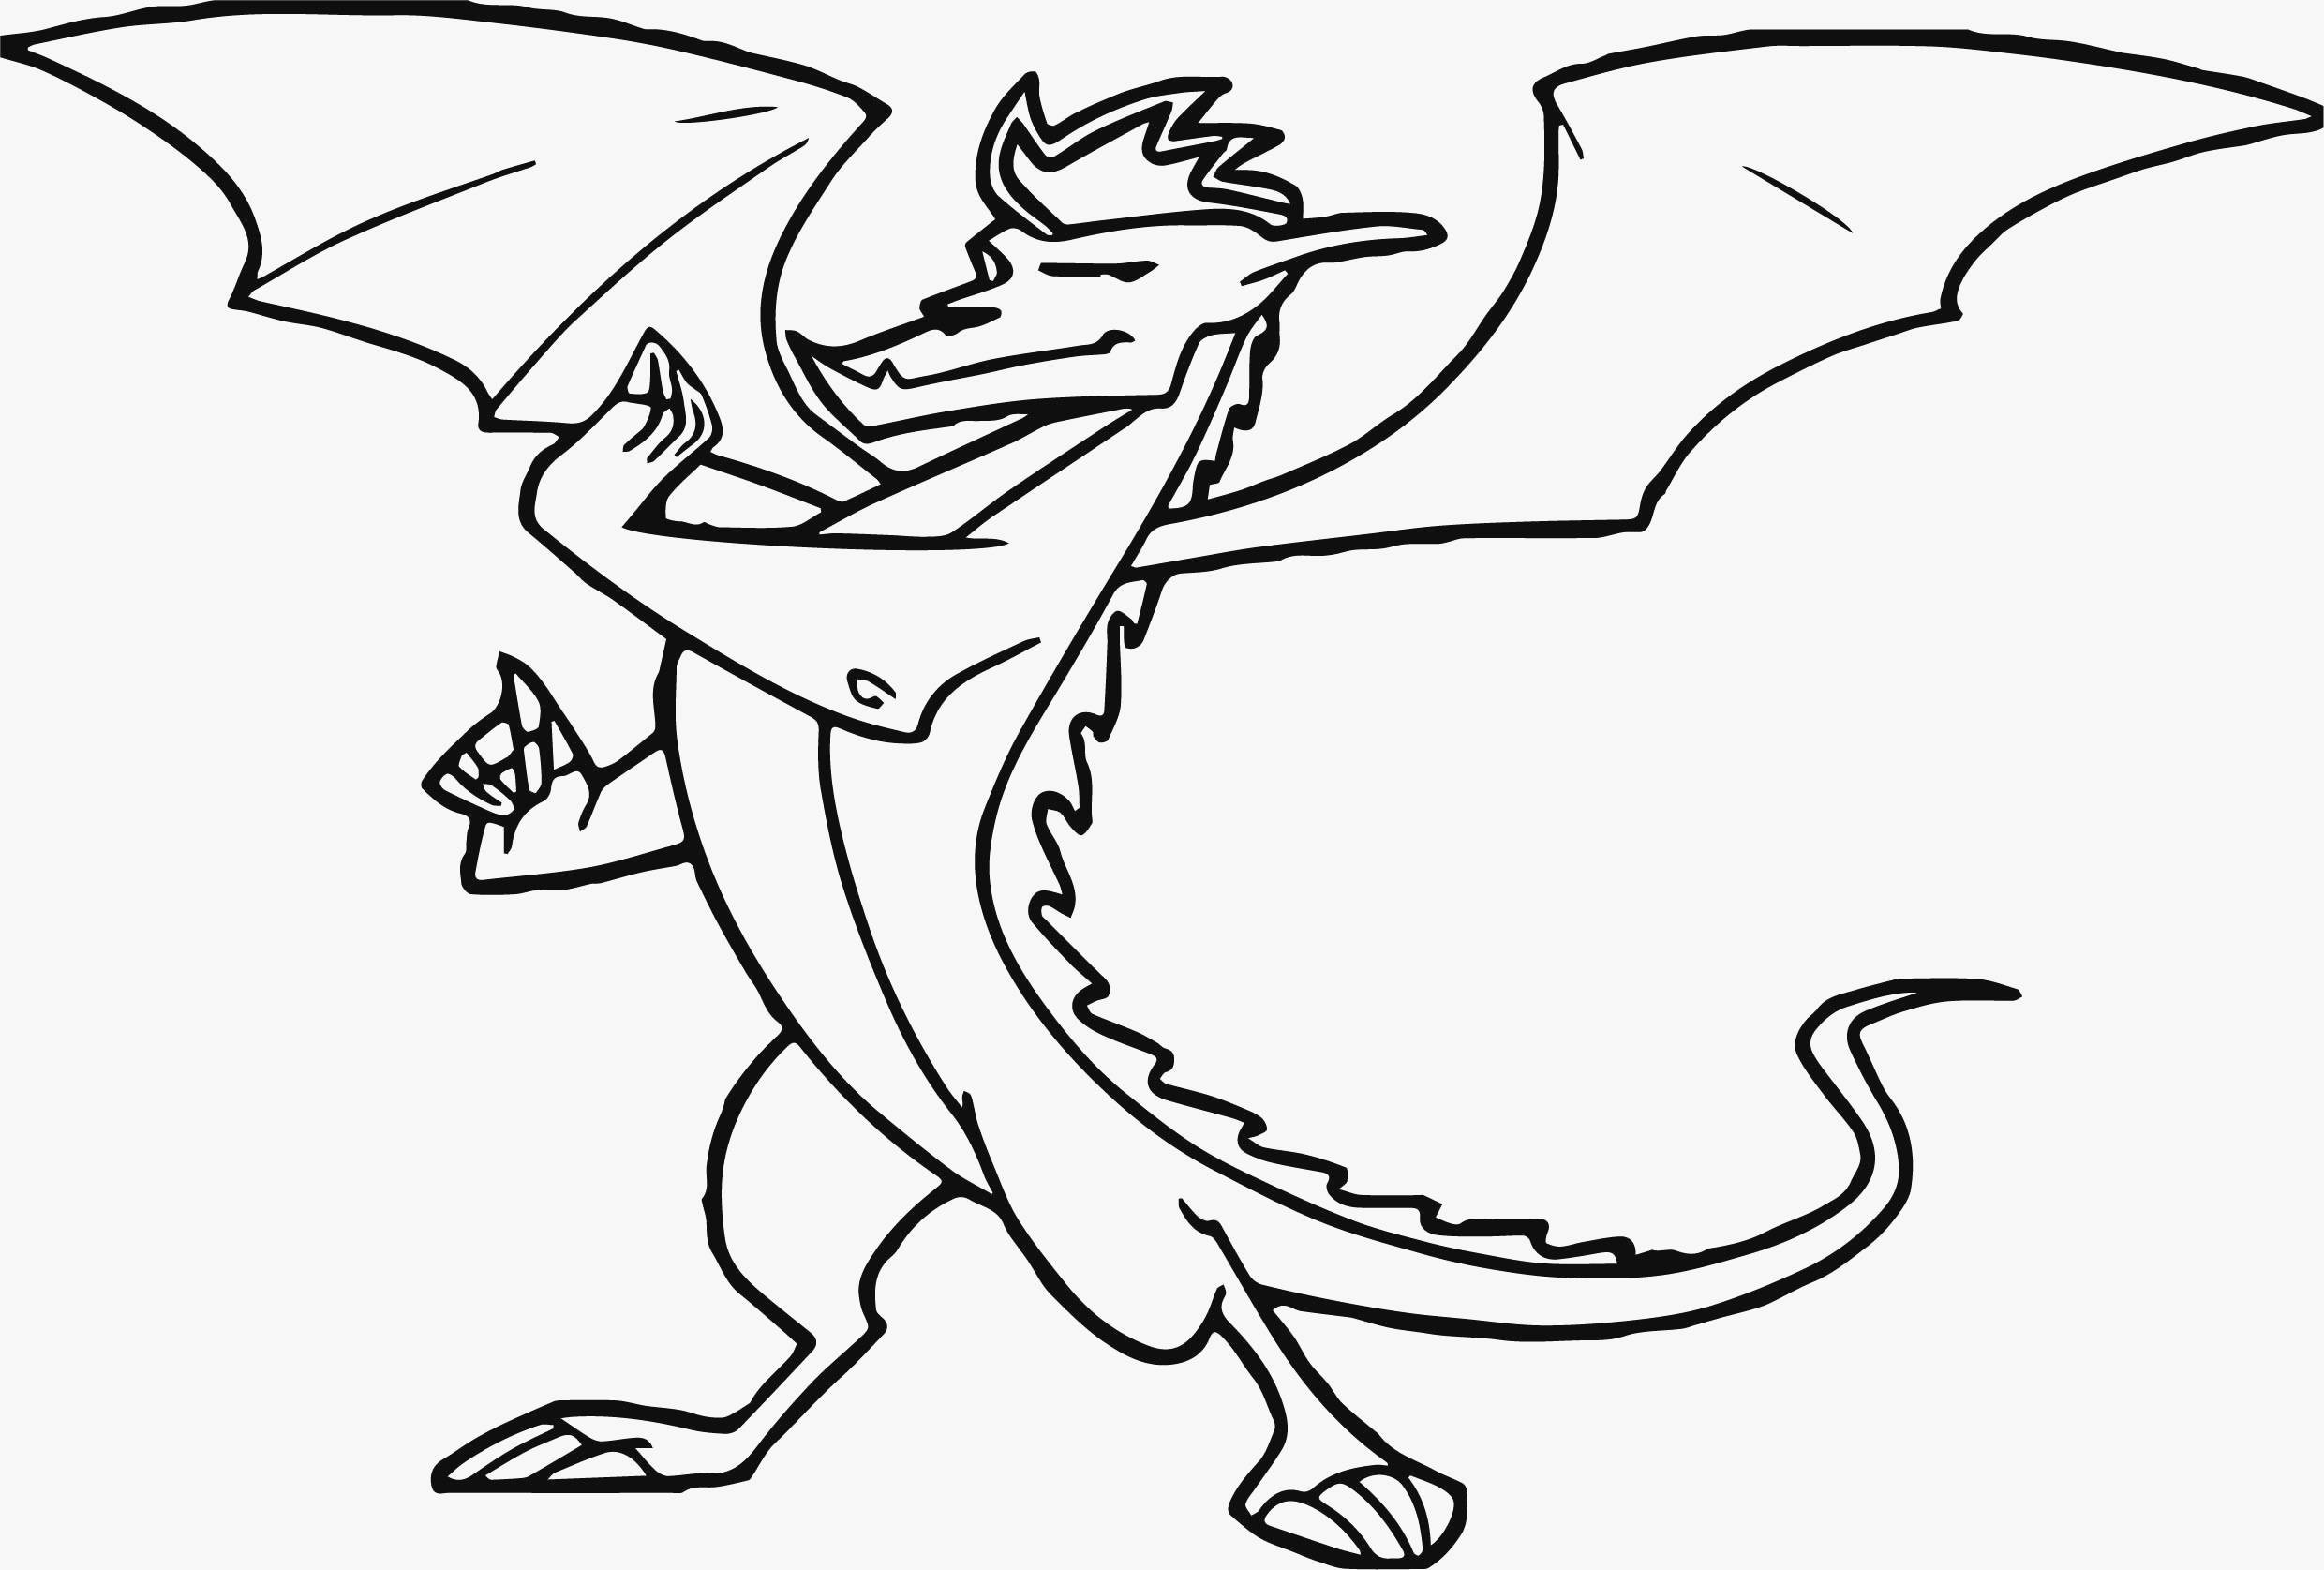 Drawing Out the Dragons 25 Druckbar Ausmalbilder Dragons Ausmalbilder Malvorlagen